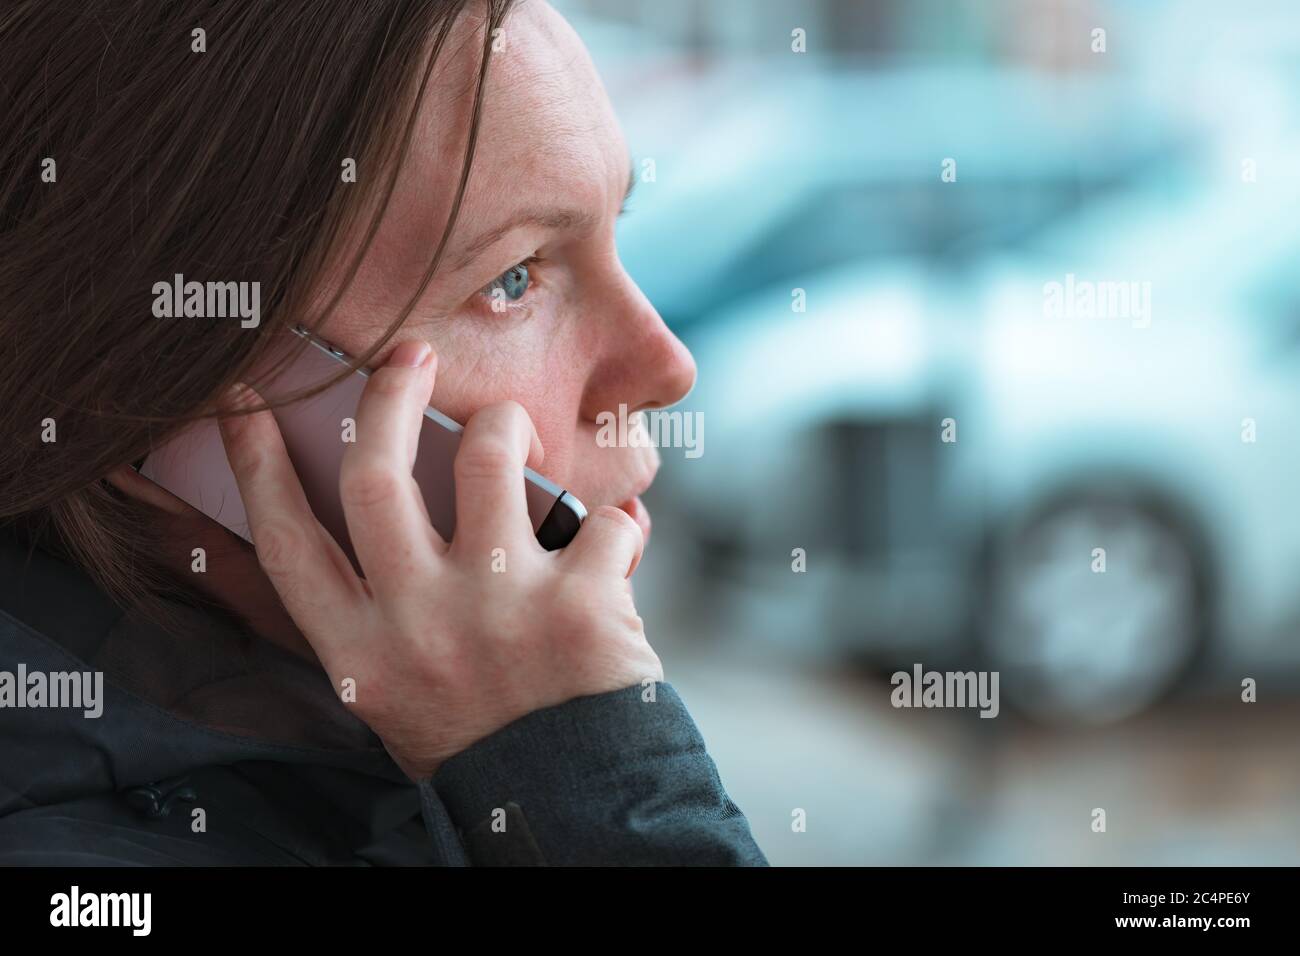 Lässige Frau, die mit dem Handy unterwegs auf der Straße in der modernen urbanen Umgebung kommuniziert, selektive Fokussierung Stockfoto